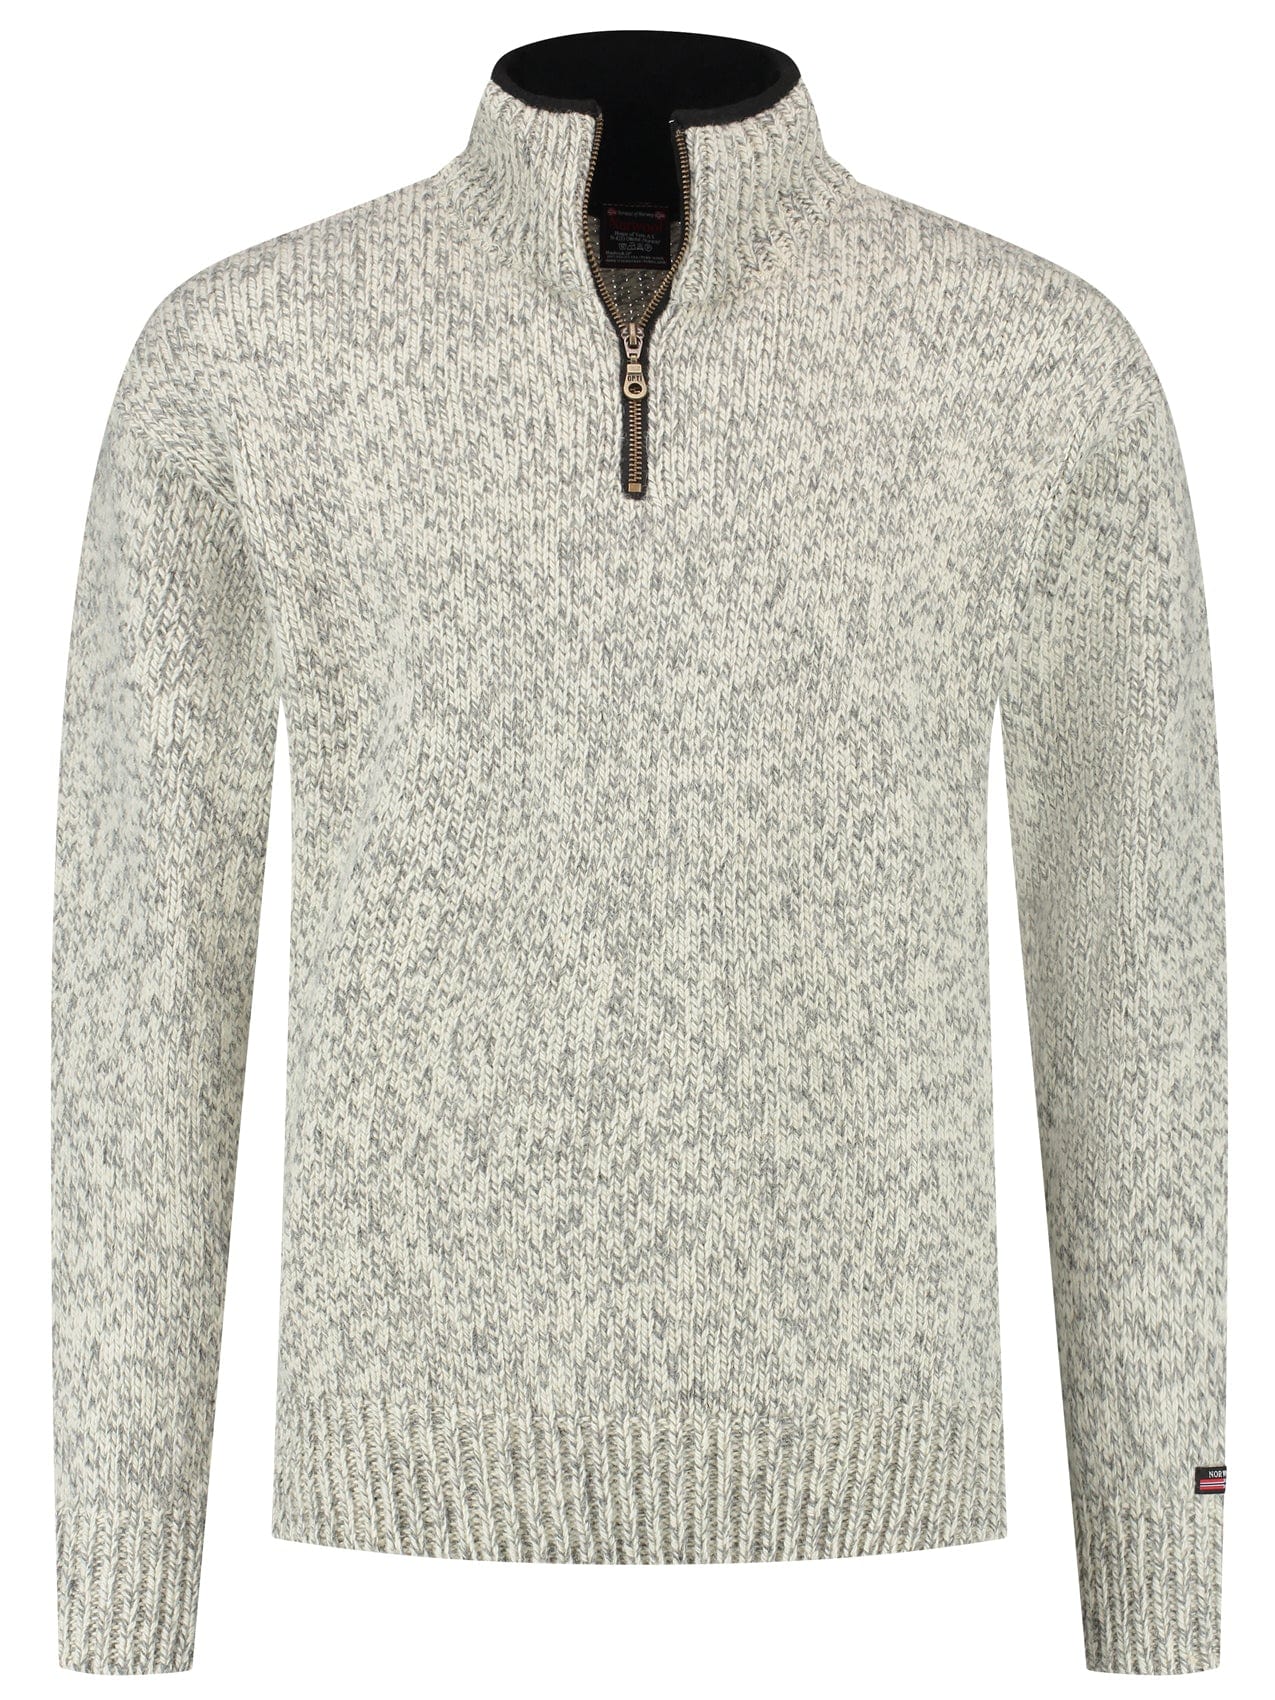 Norfinde Norwegian zip-up sweater in 100% pure new wool